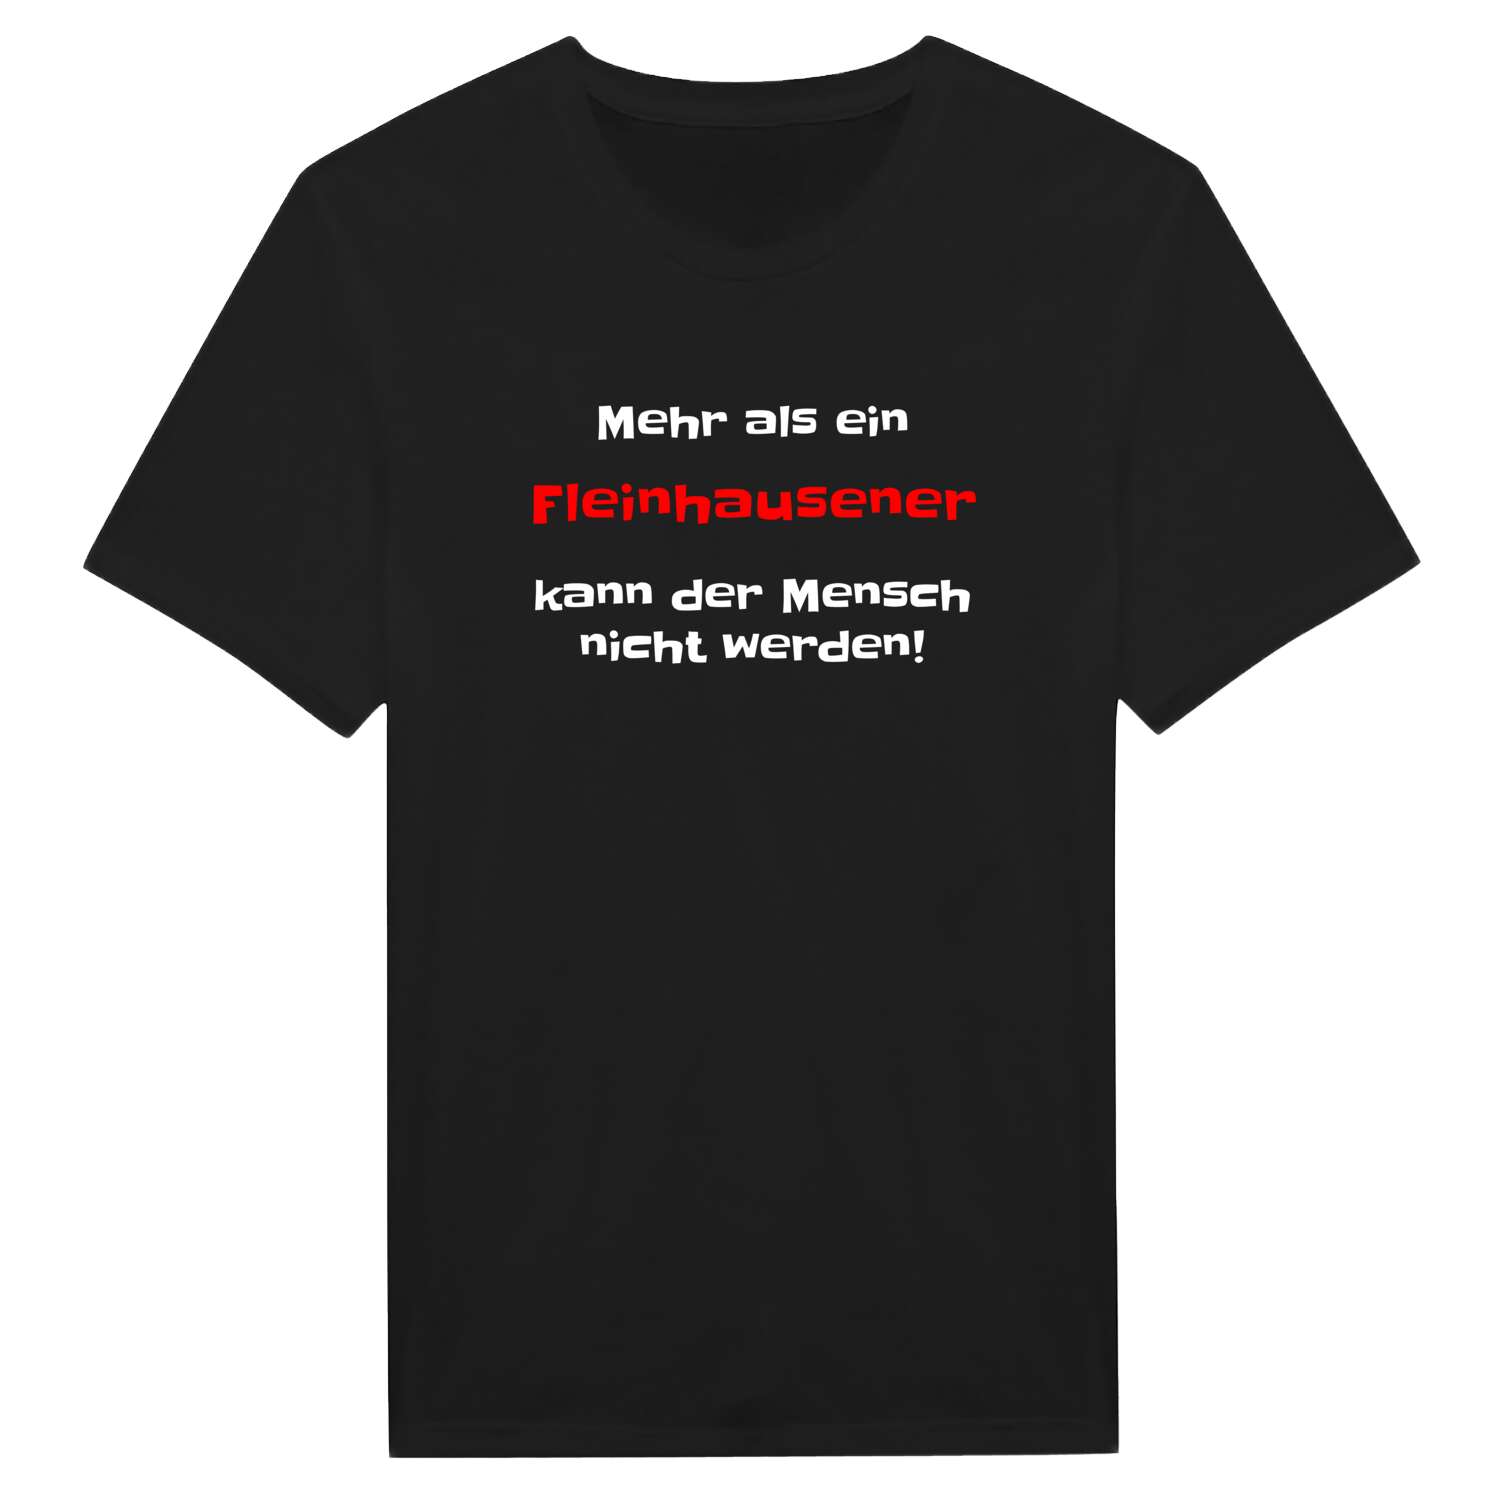 Fleinhausen T-Shirt »Mehr als ein«